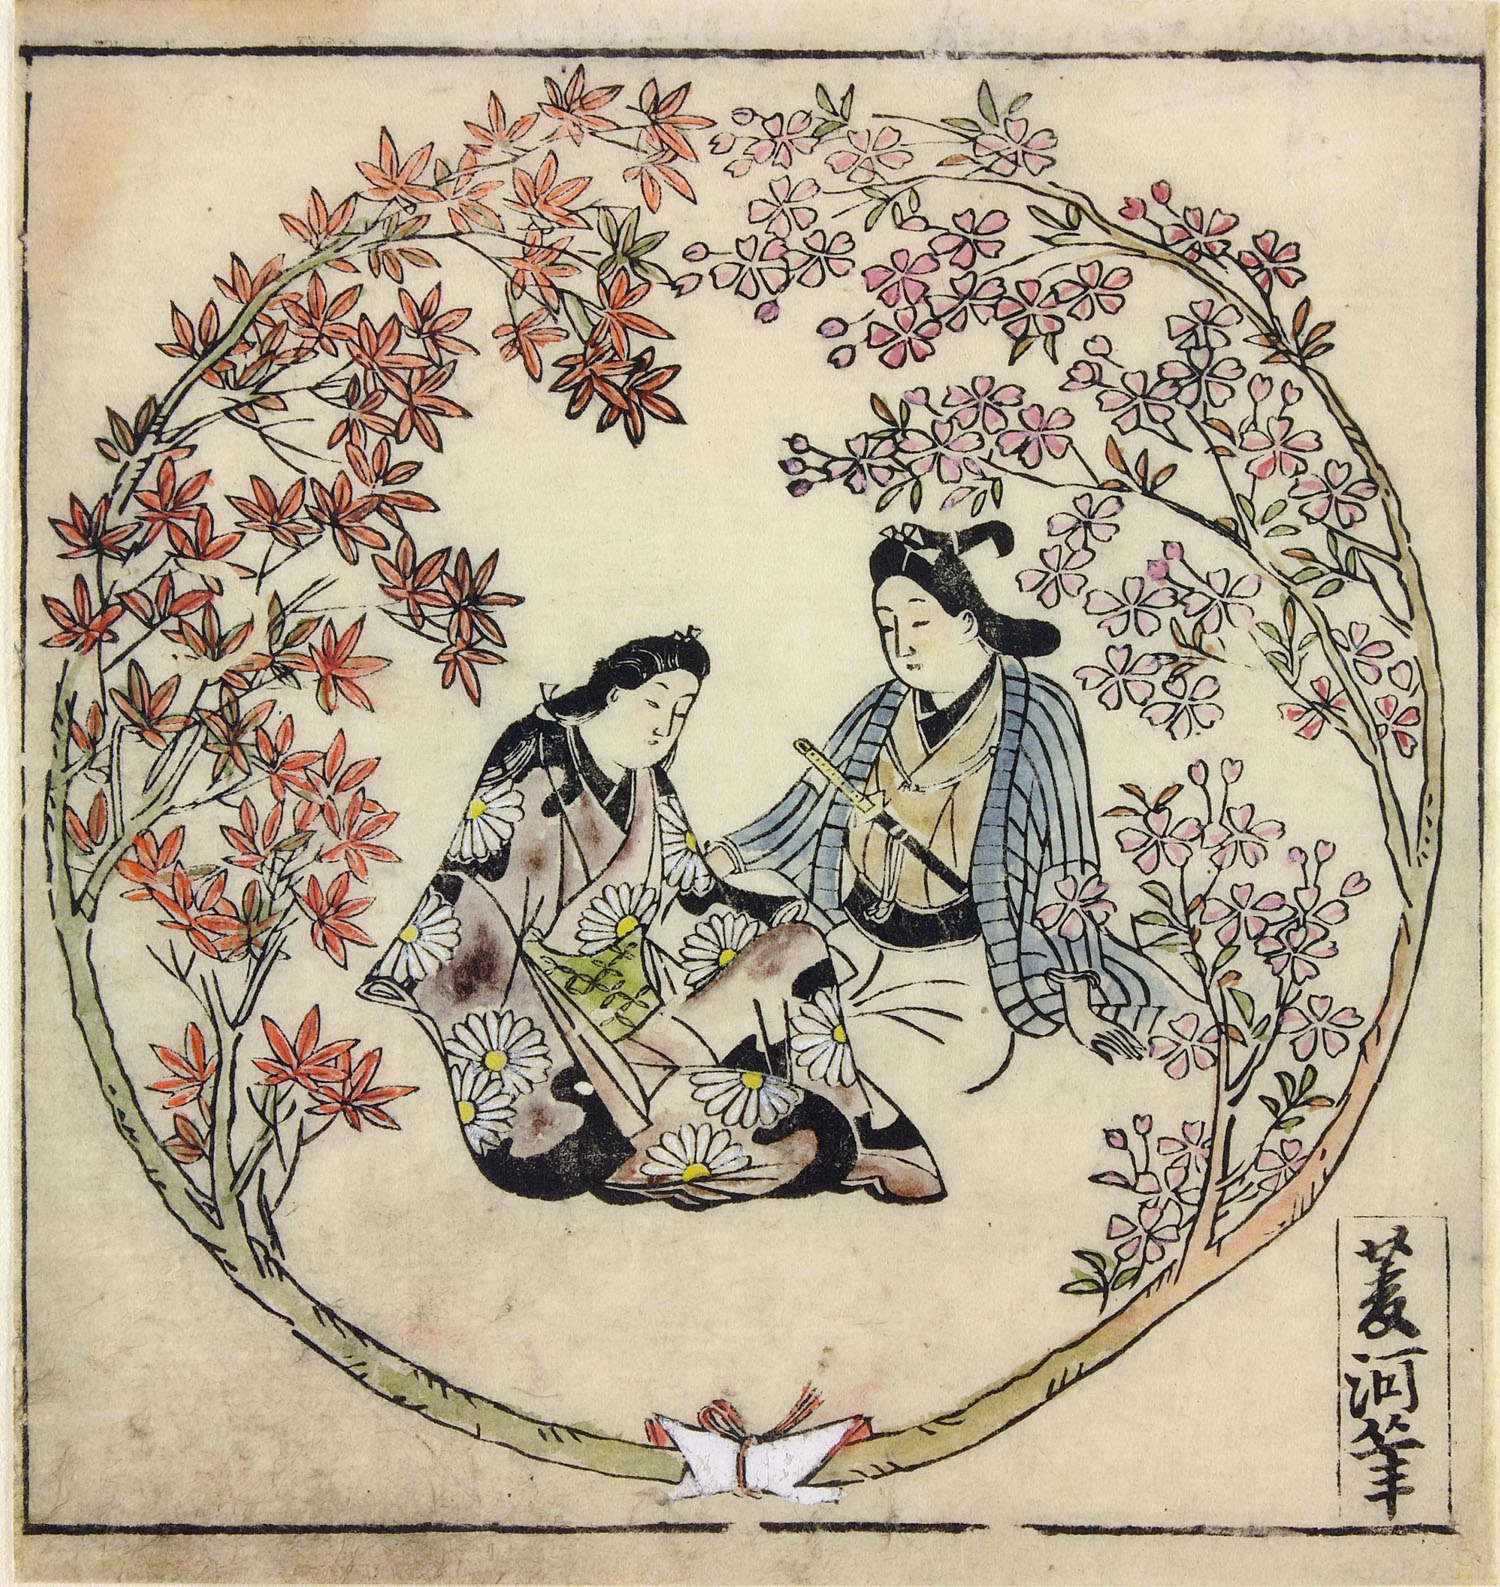 Моронобу Хисикава. "Молодые мужчина и женщина в рондо из клена и вишнёвых цветов" 1683.